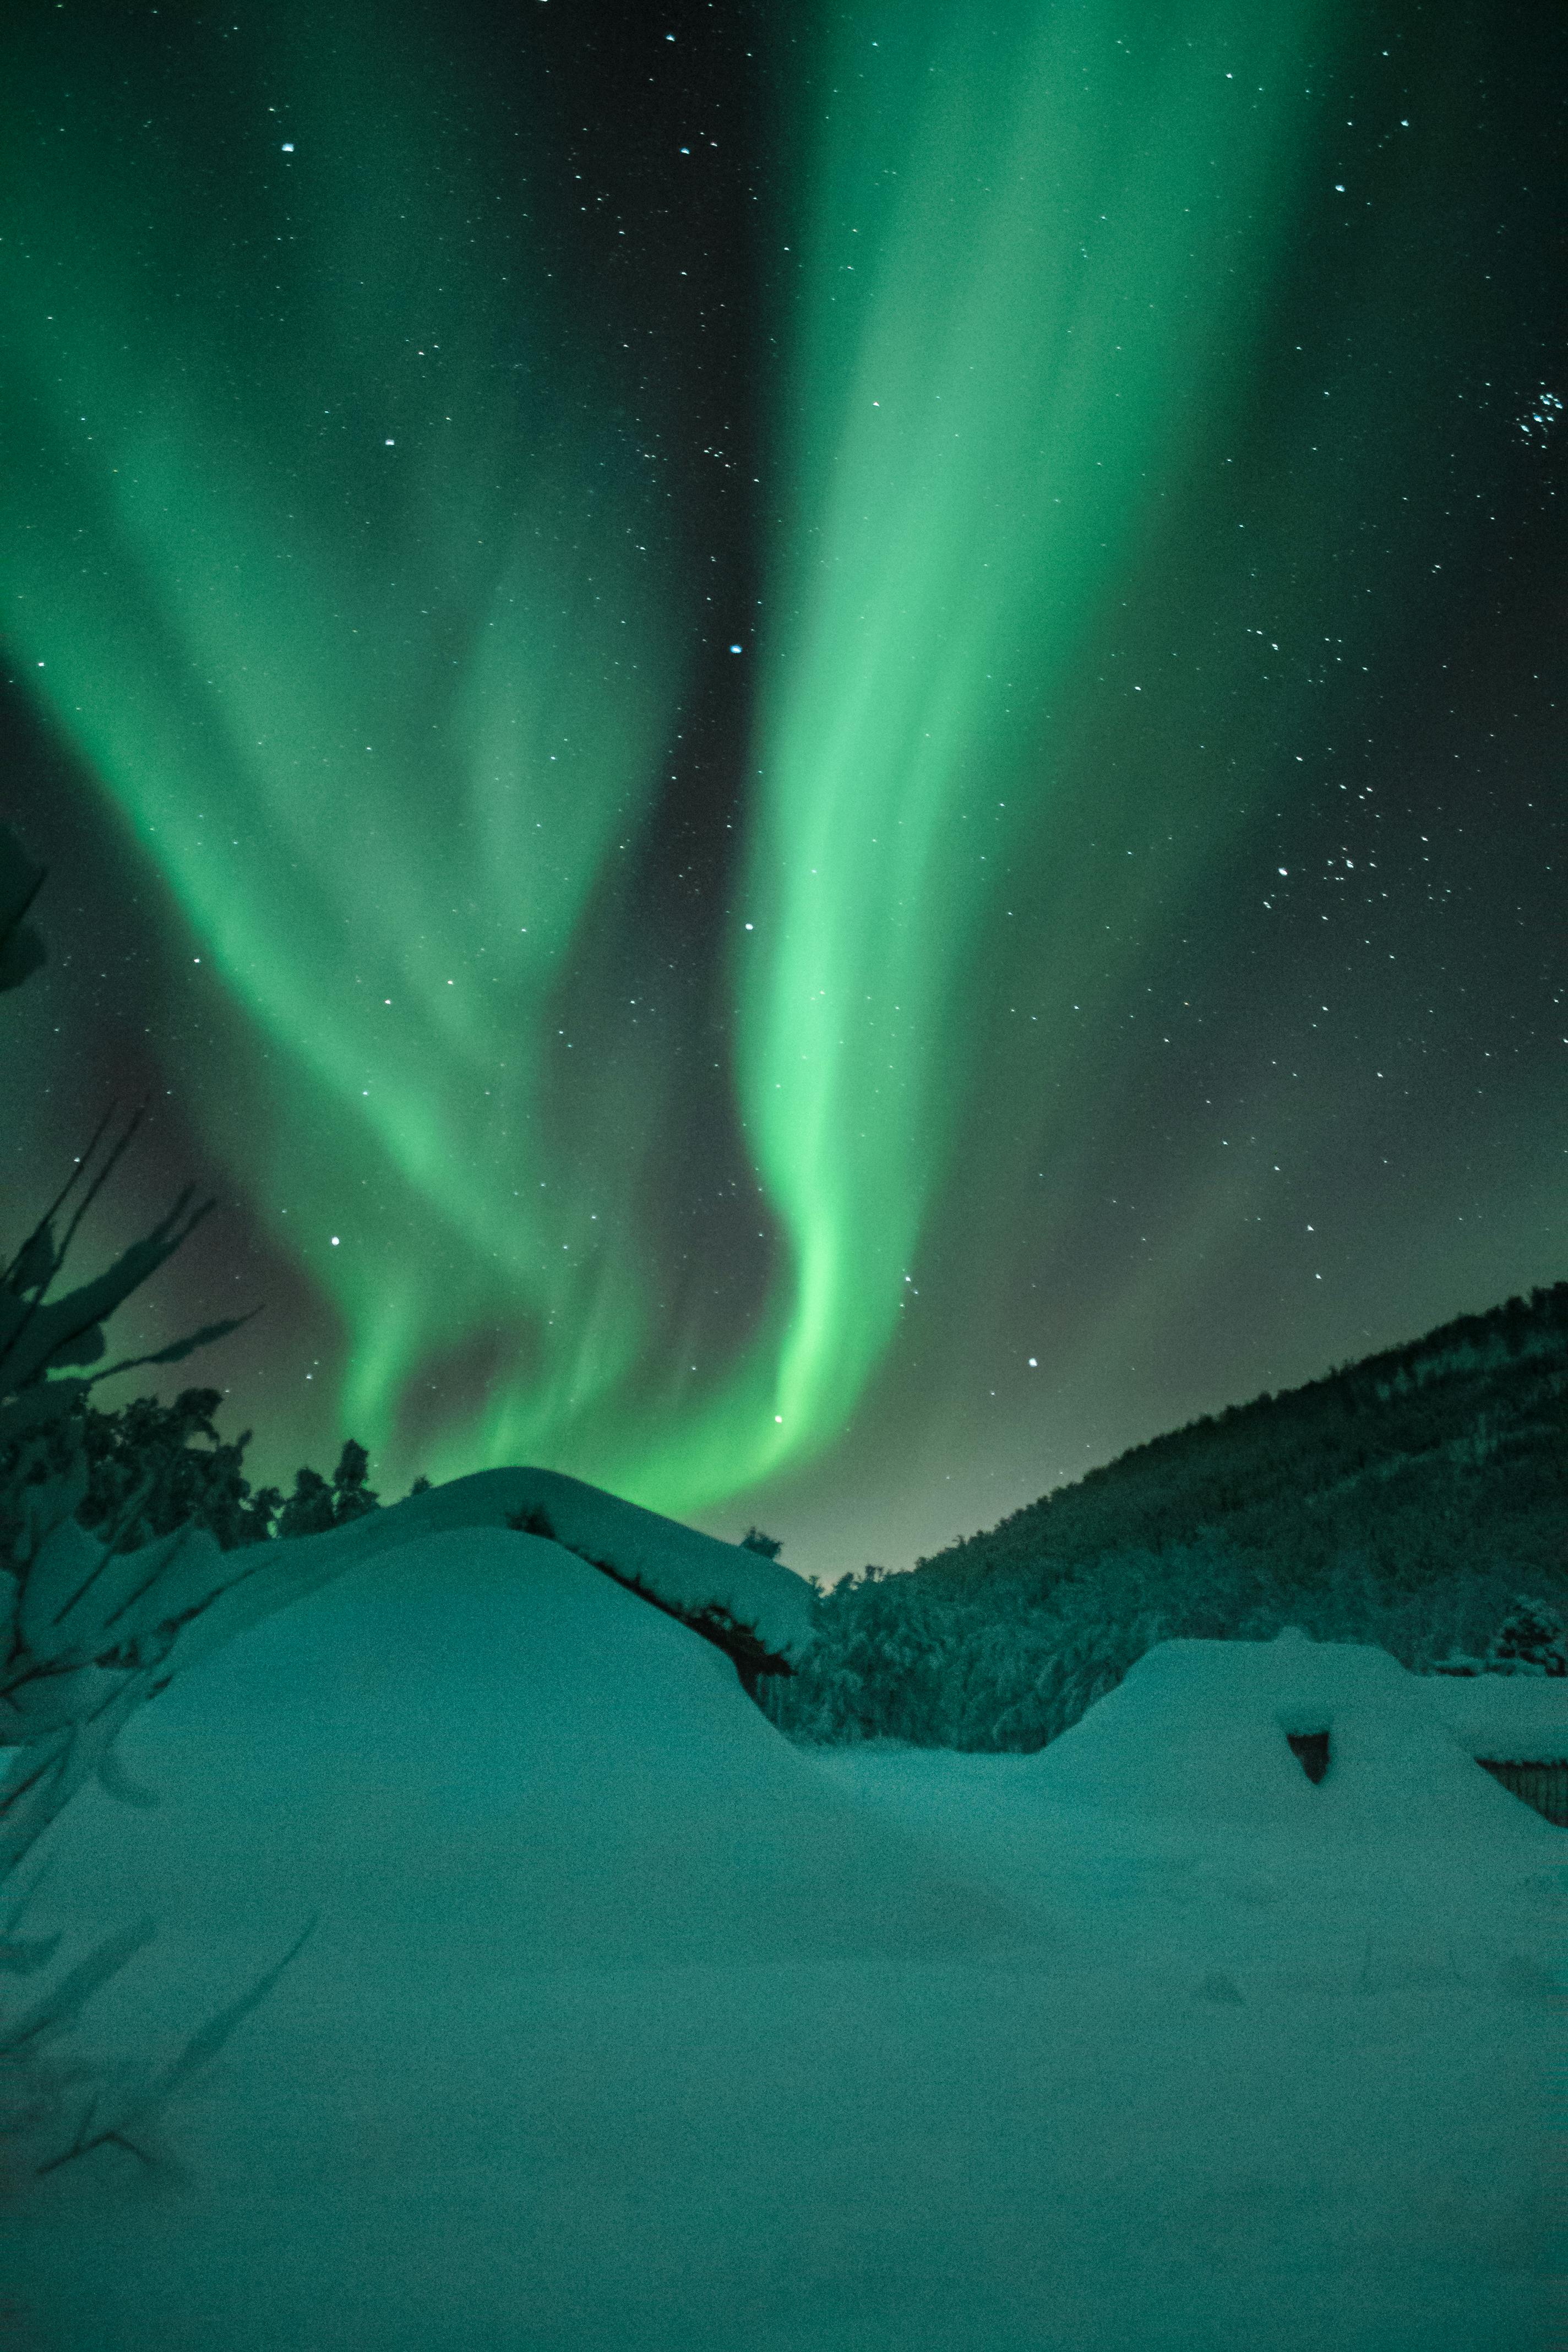 Fotos de Aurora Boreal, +94.000 Fotos de stock gratuitas de gran calidad